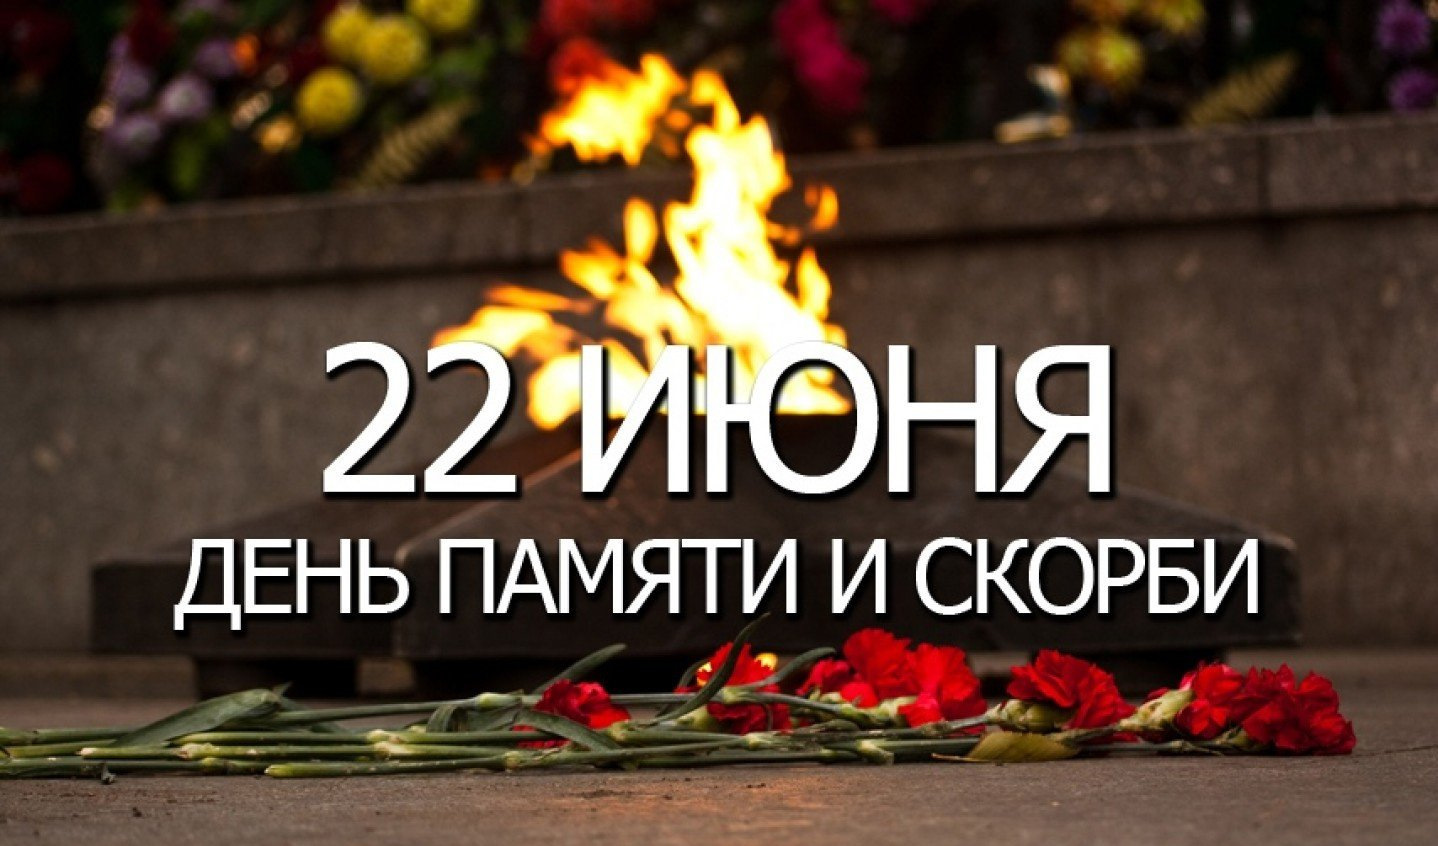 День памяти это день рождения. День памяти и скорби. 22 Июня день памяти. День памяти и скорби — день начала Великой Отечественной войны. День скорби 22 июня.